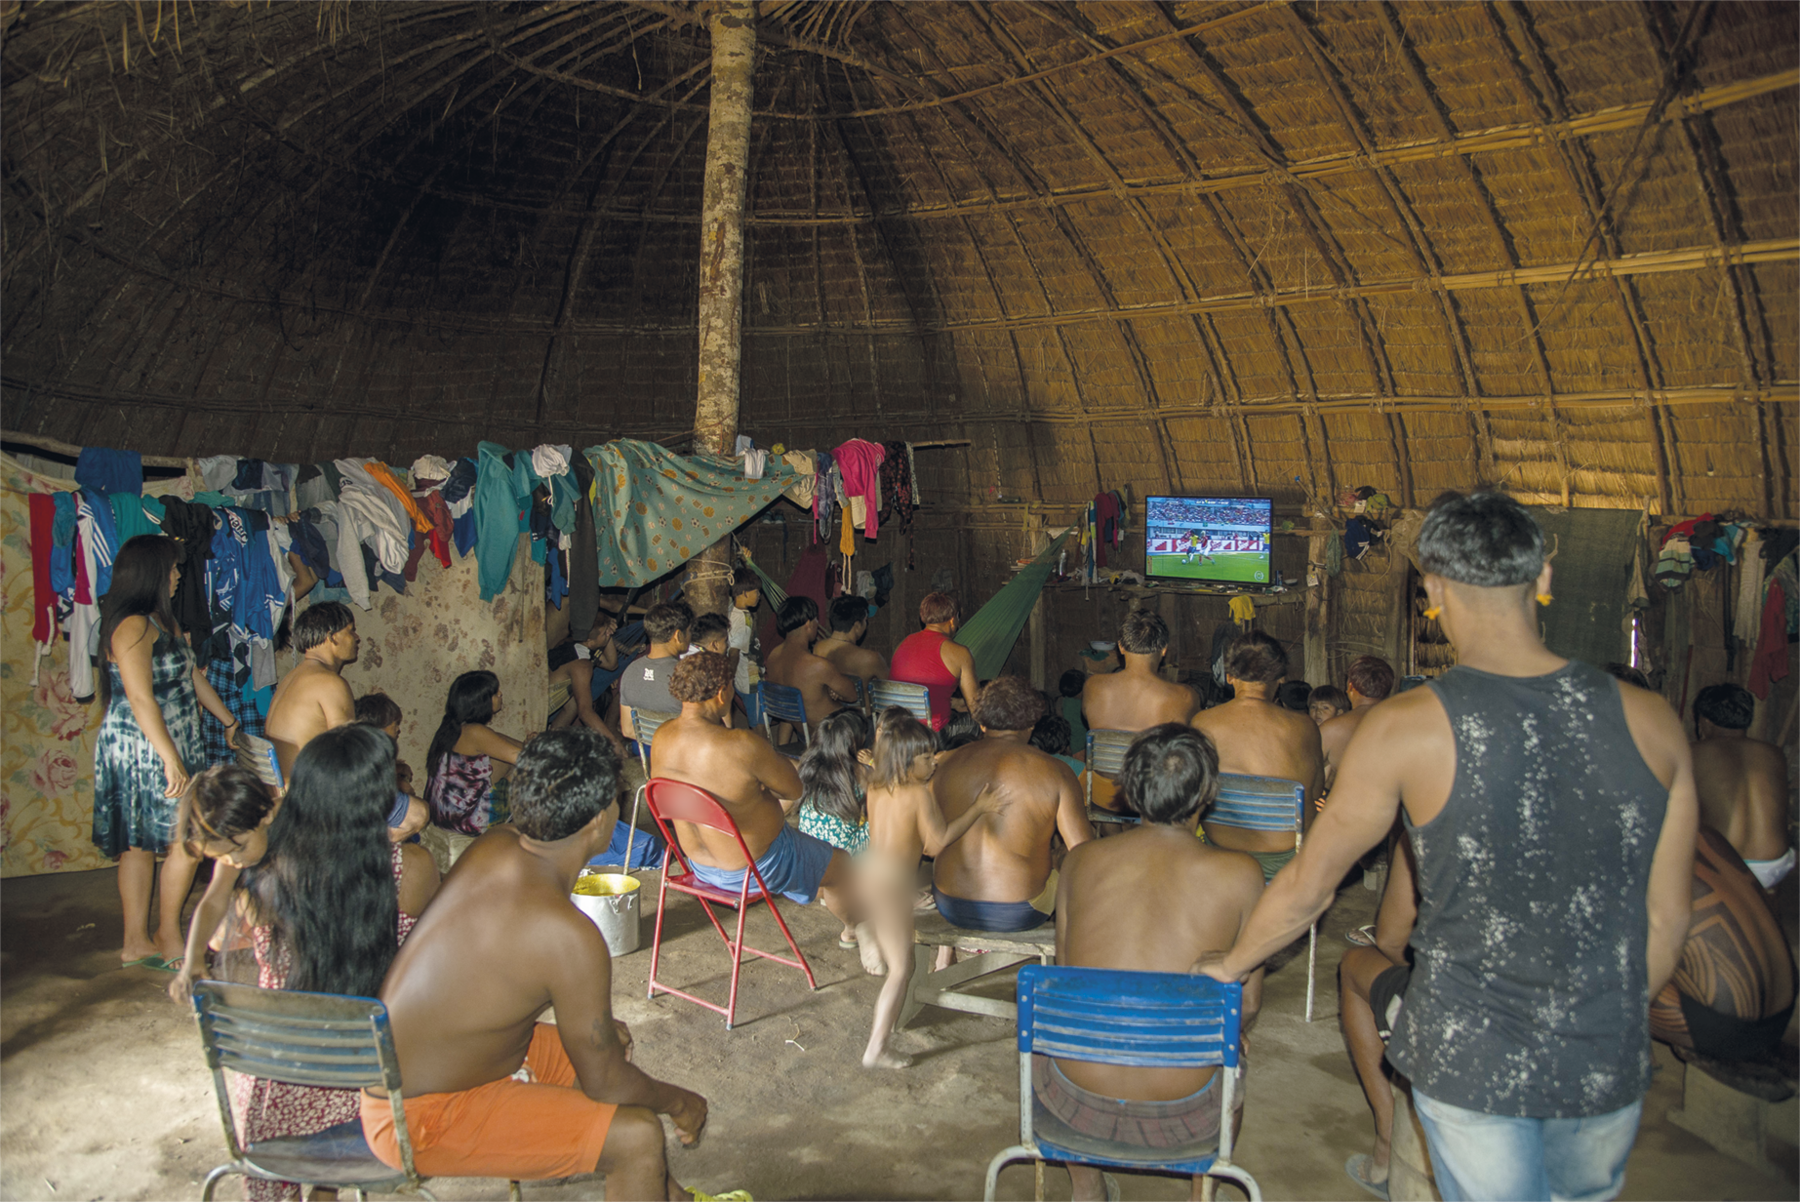 Um grupo de indígenas reunidos em uma moradia indígena, assistindo uma partida de futebol em uma televisão que está ao fundo. A maioria deles está sentada em cadeiras, outros estão em pé. Ao fundo há roupas penduradas.